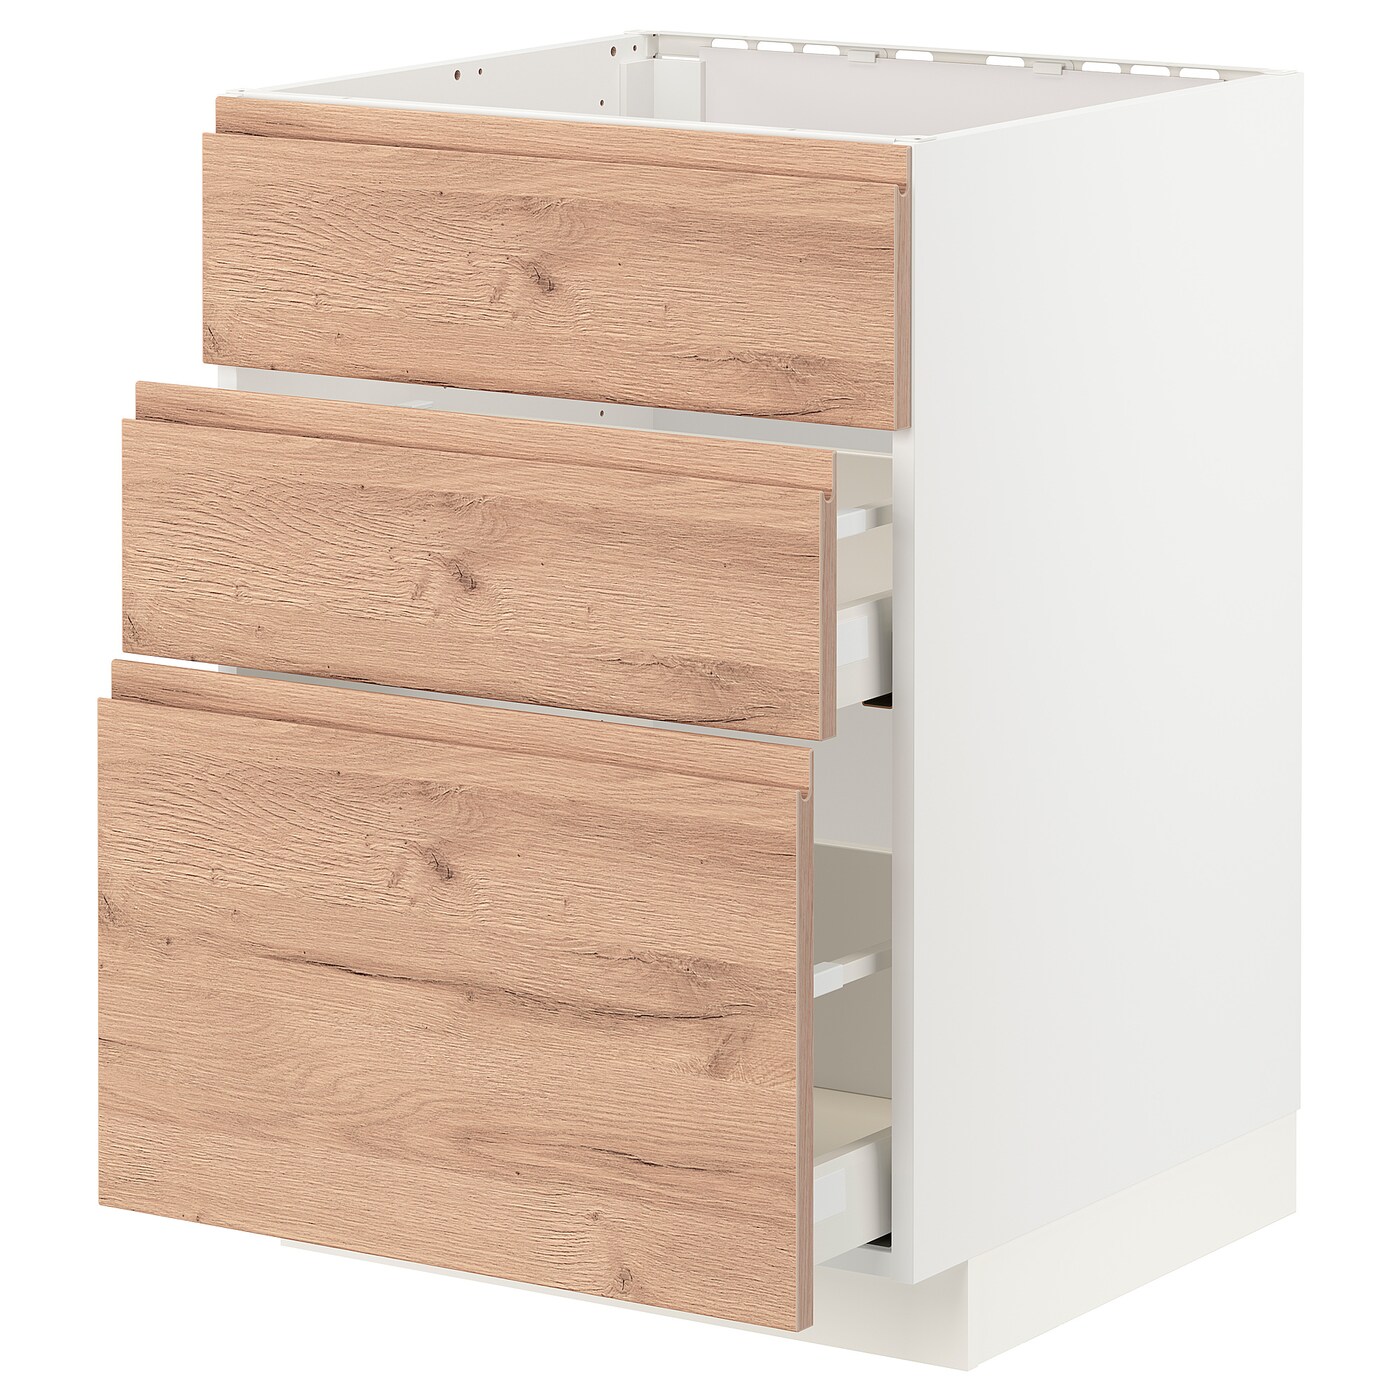 Напольный кухонный шкаф  - IKEA METOD MAXIMERA, 88x62x60см, белый/светлый ясень, МЕТОД МАКСИМЕРА ИКЕА